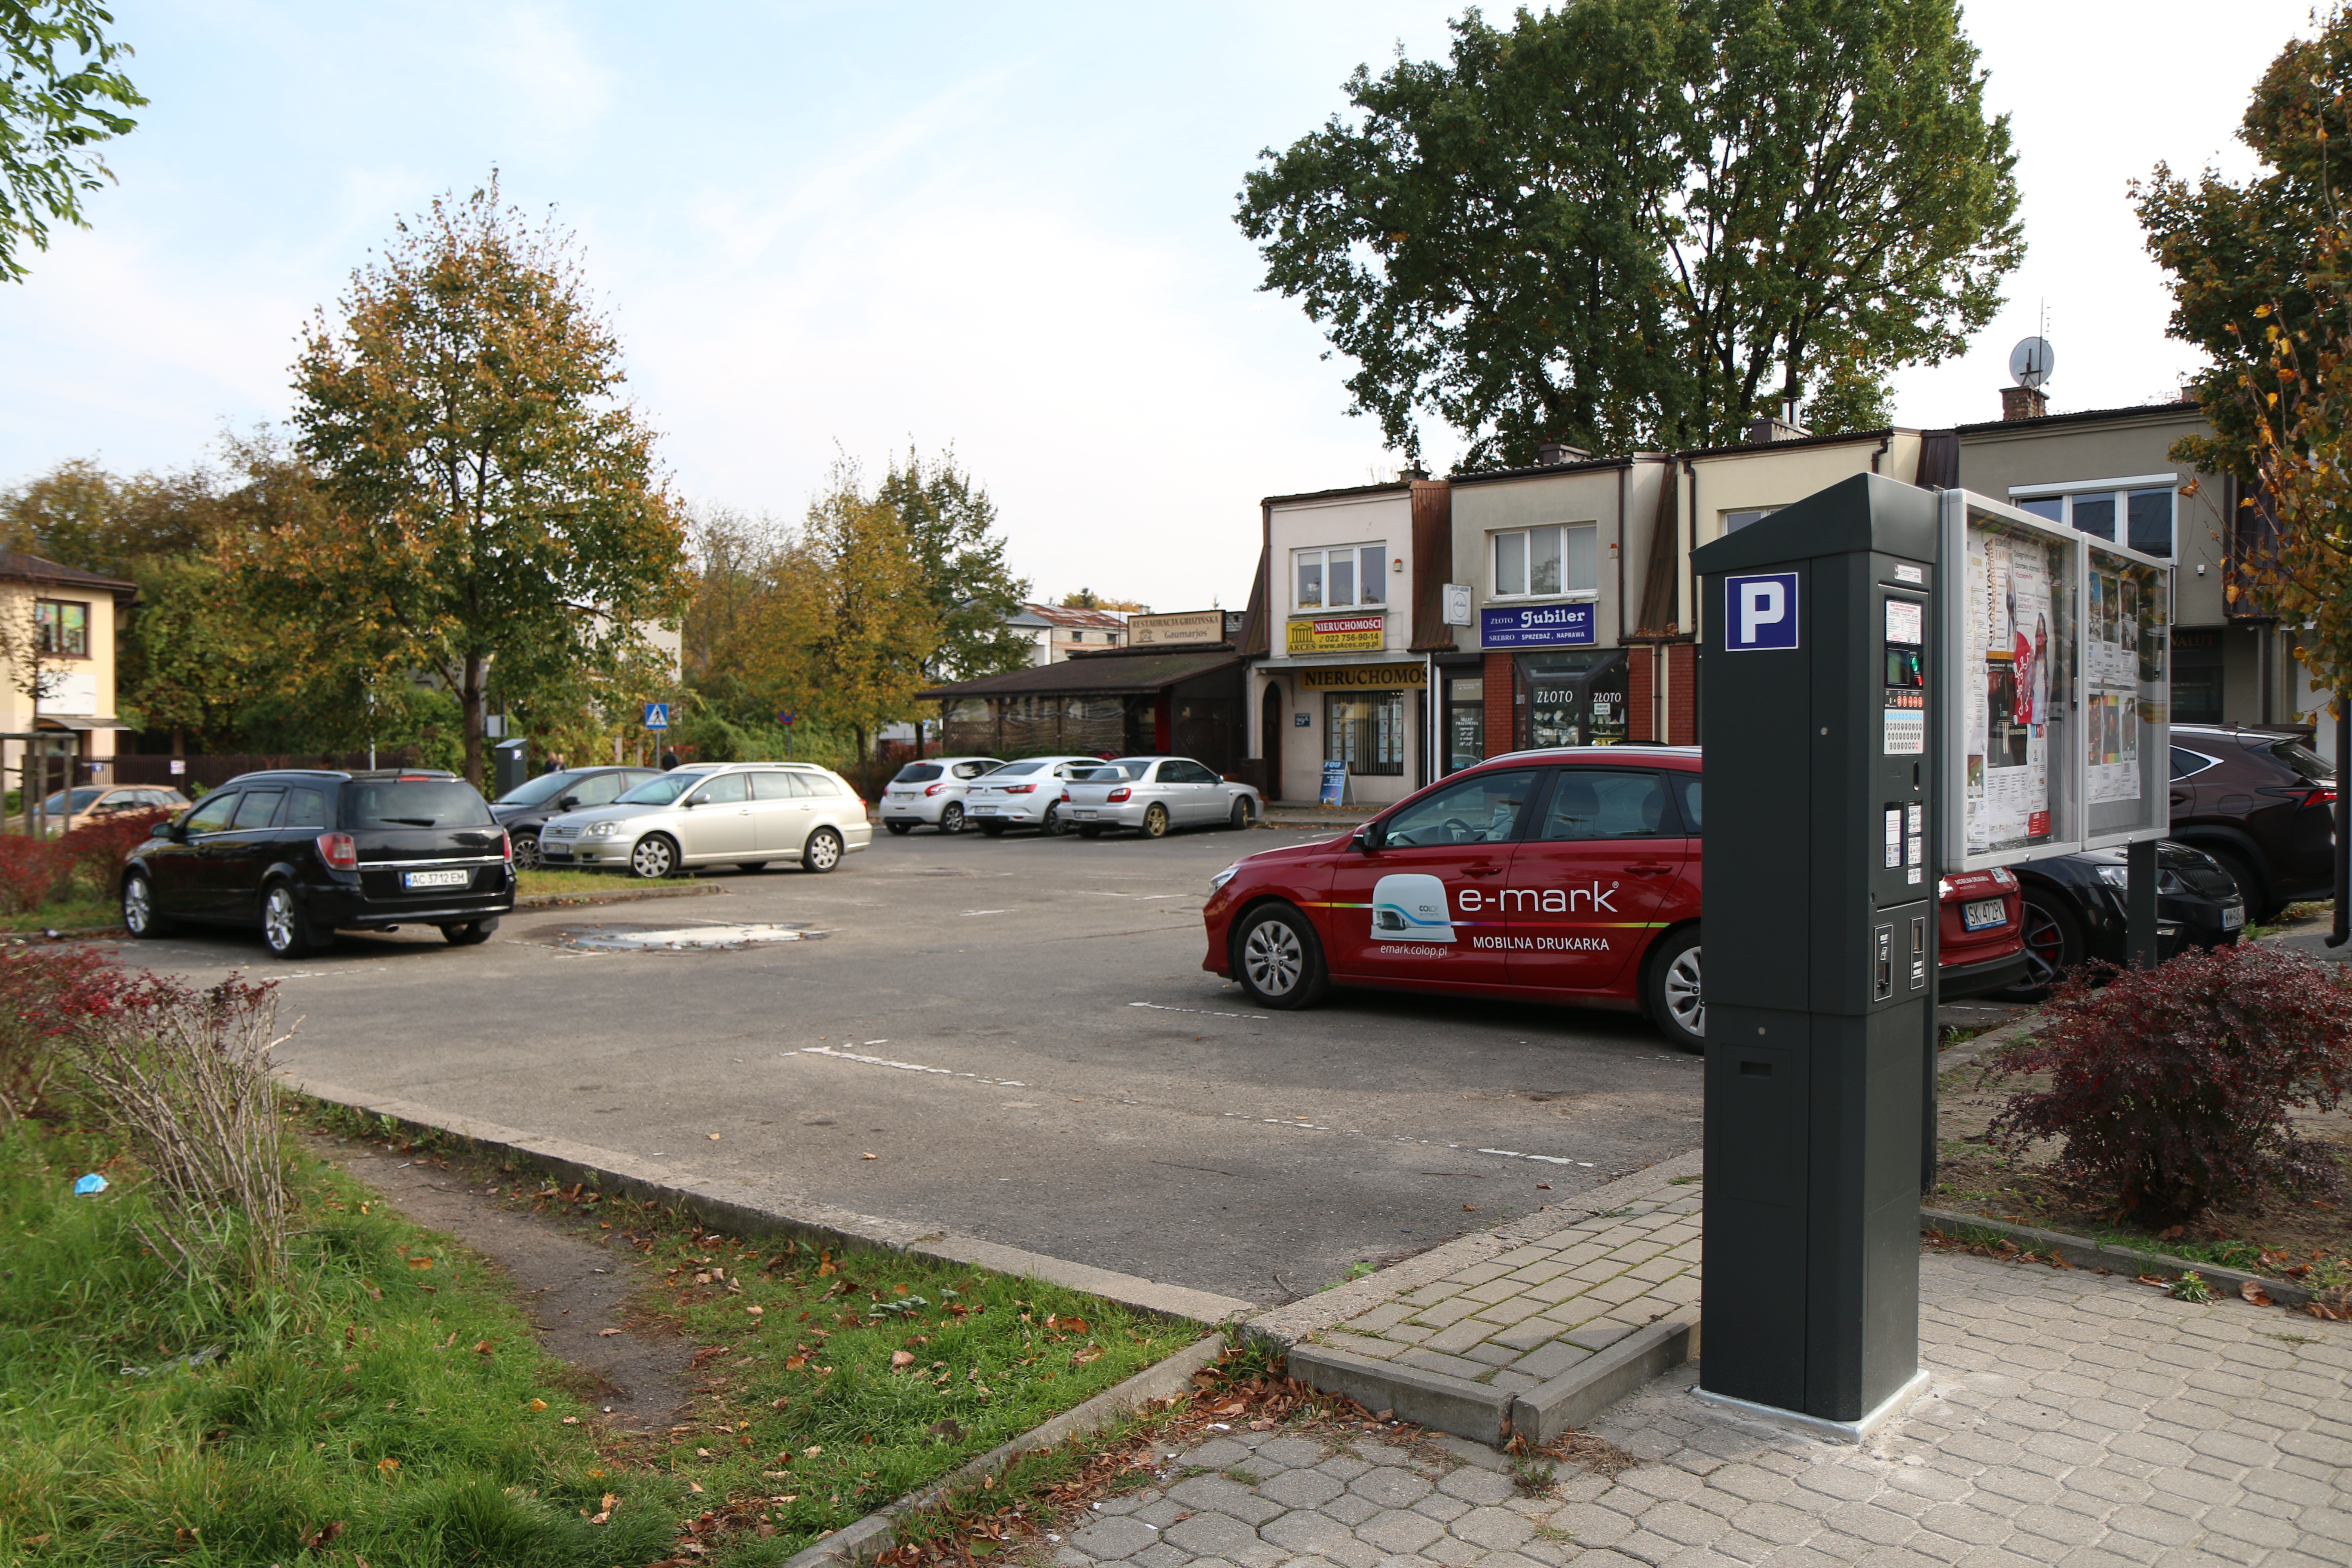 Ruszają Miejskie Parkingi Płatne. Na zdjęciu parking na rogu ulic Kilińskiego i Nadarzyńskiej z parkomatem.